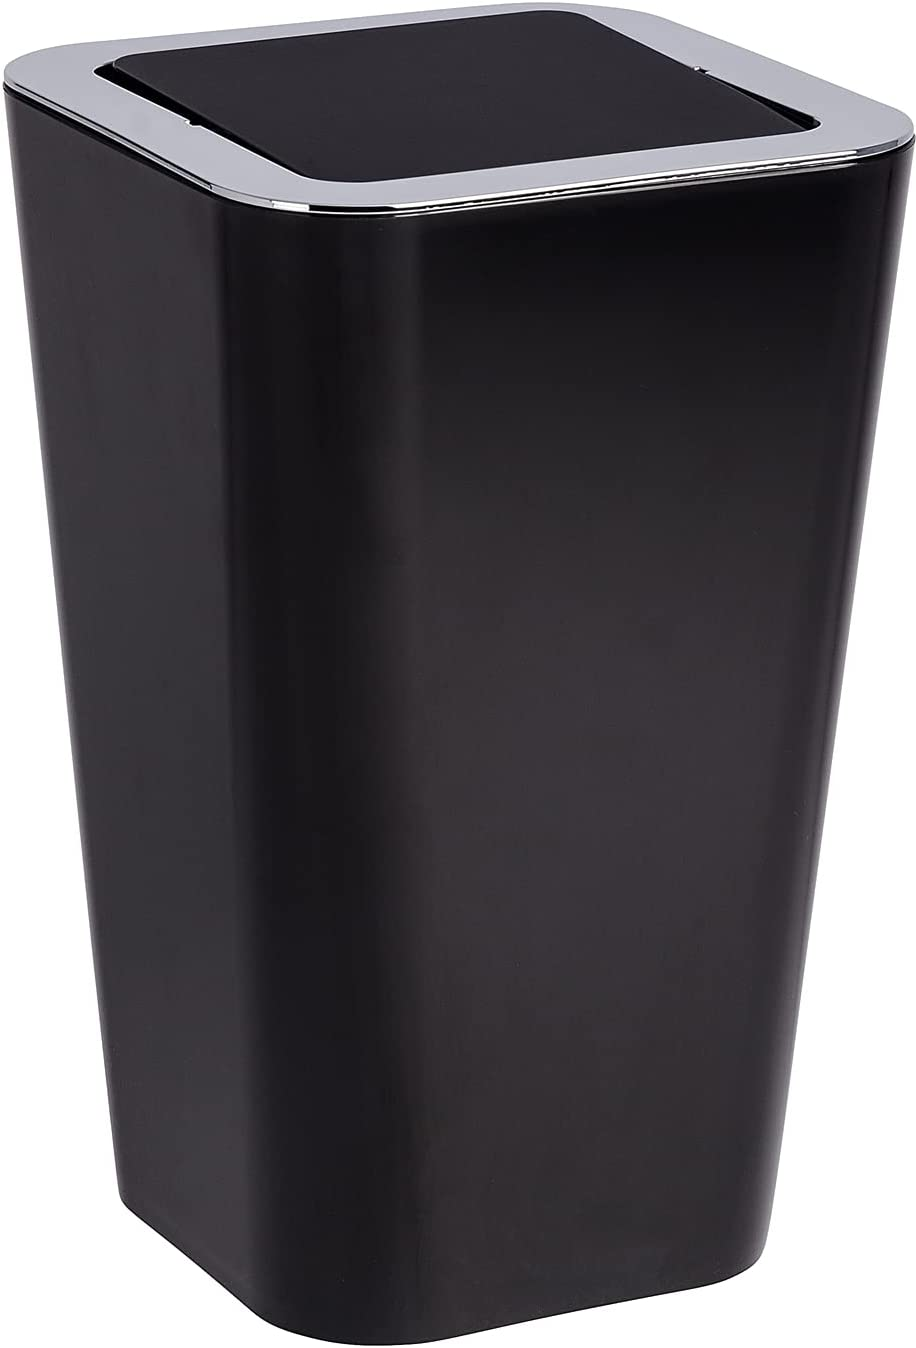 Schwingdeckeleimer Candy Black - Abfallbehälter mit Schwingdeckel Fassungsvermögen: 6 l, Polystyrol, 18 x 28.5 x 18 cm, Schwarz